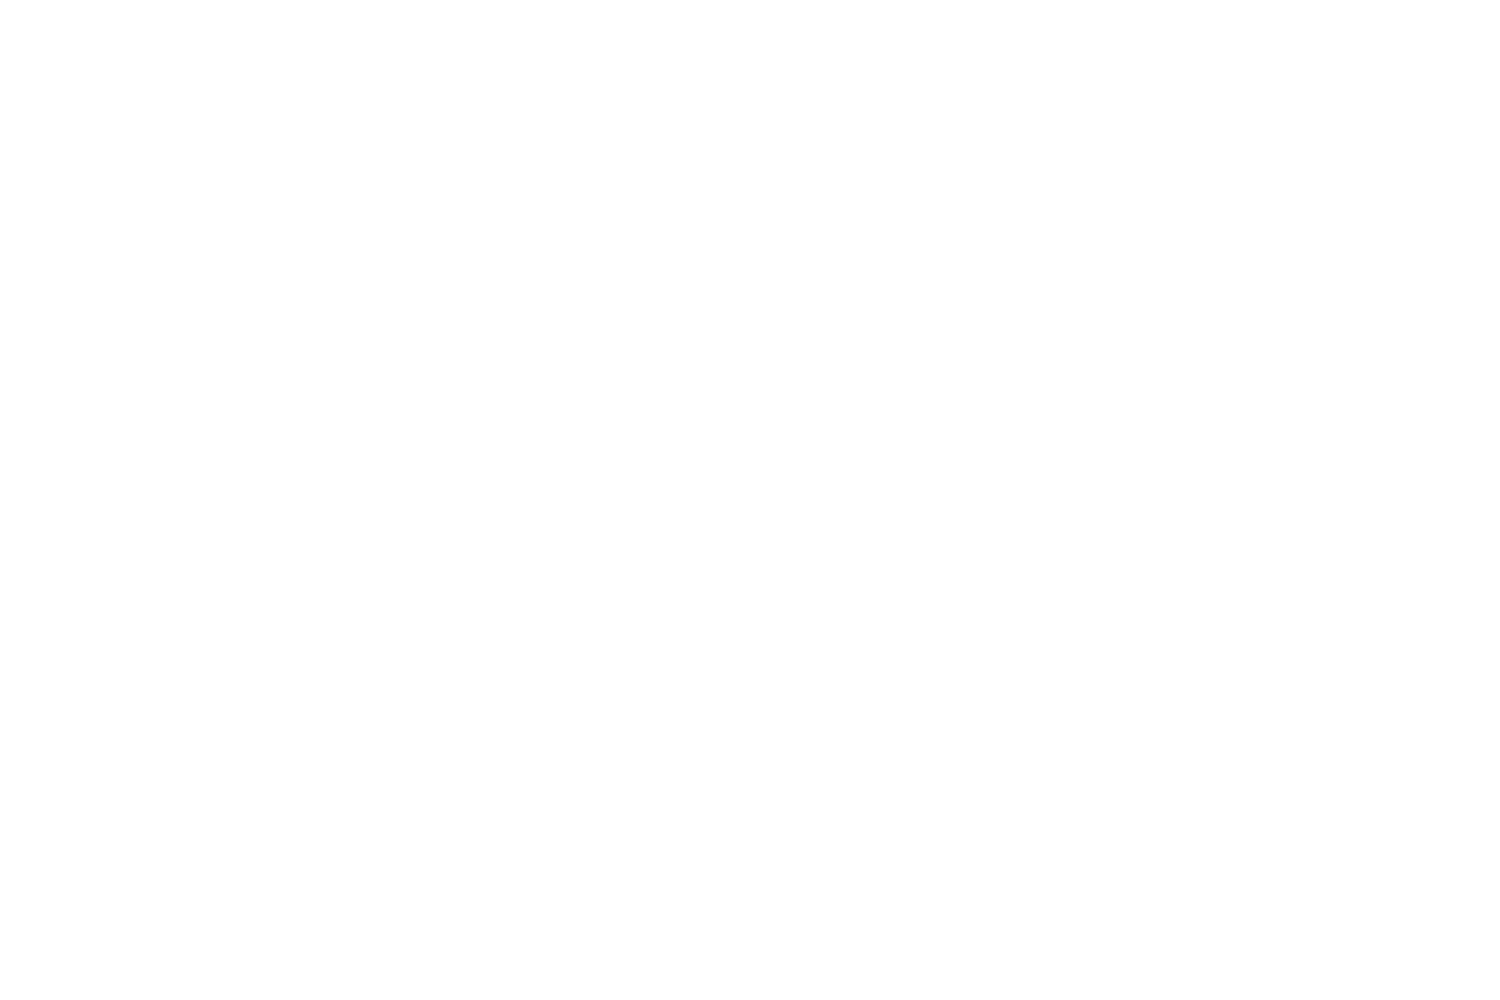 THE EDITORIAL NAIL